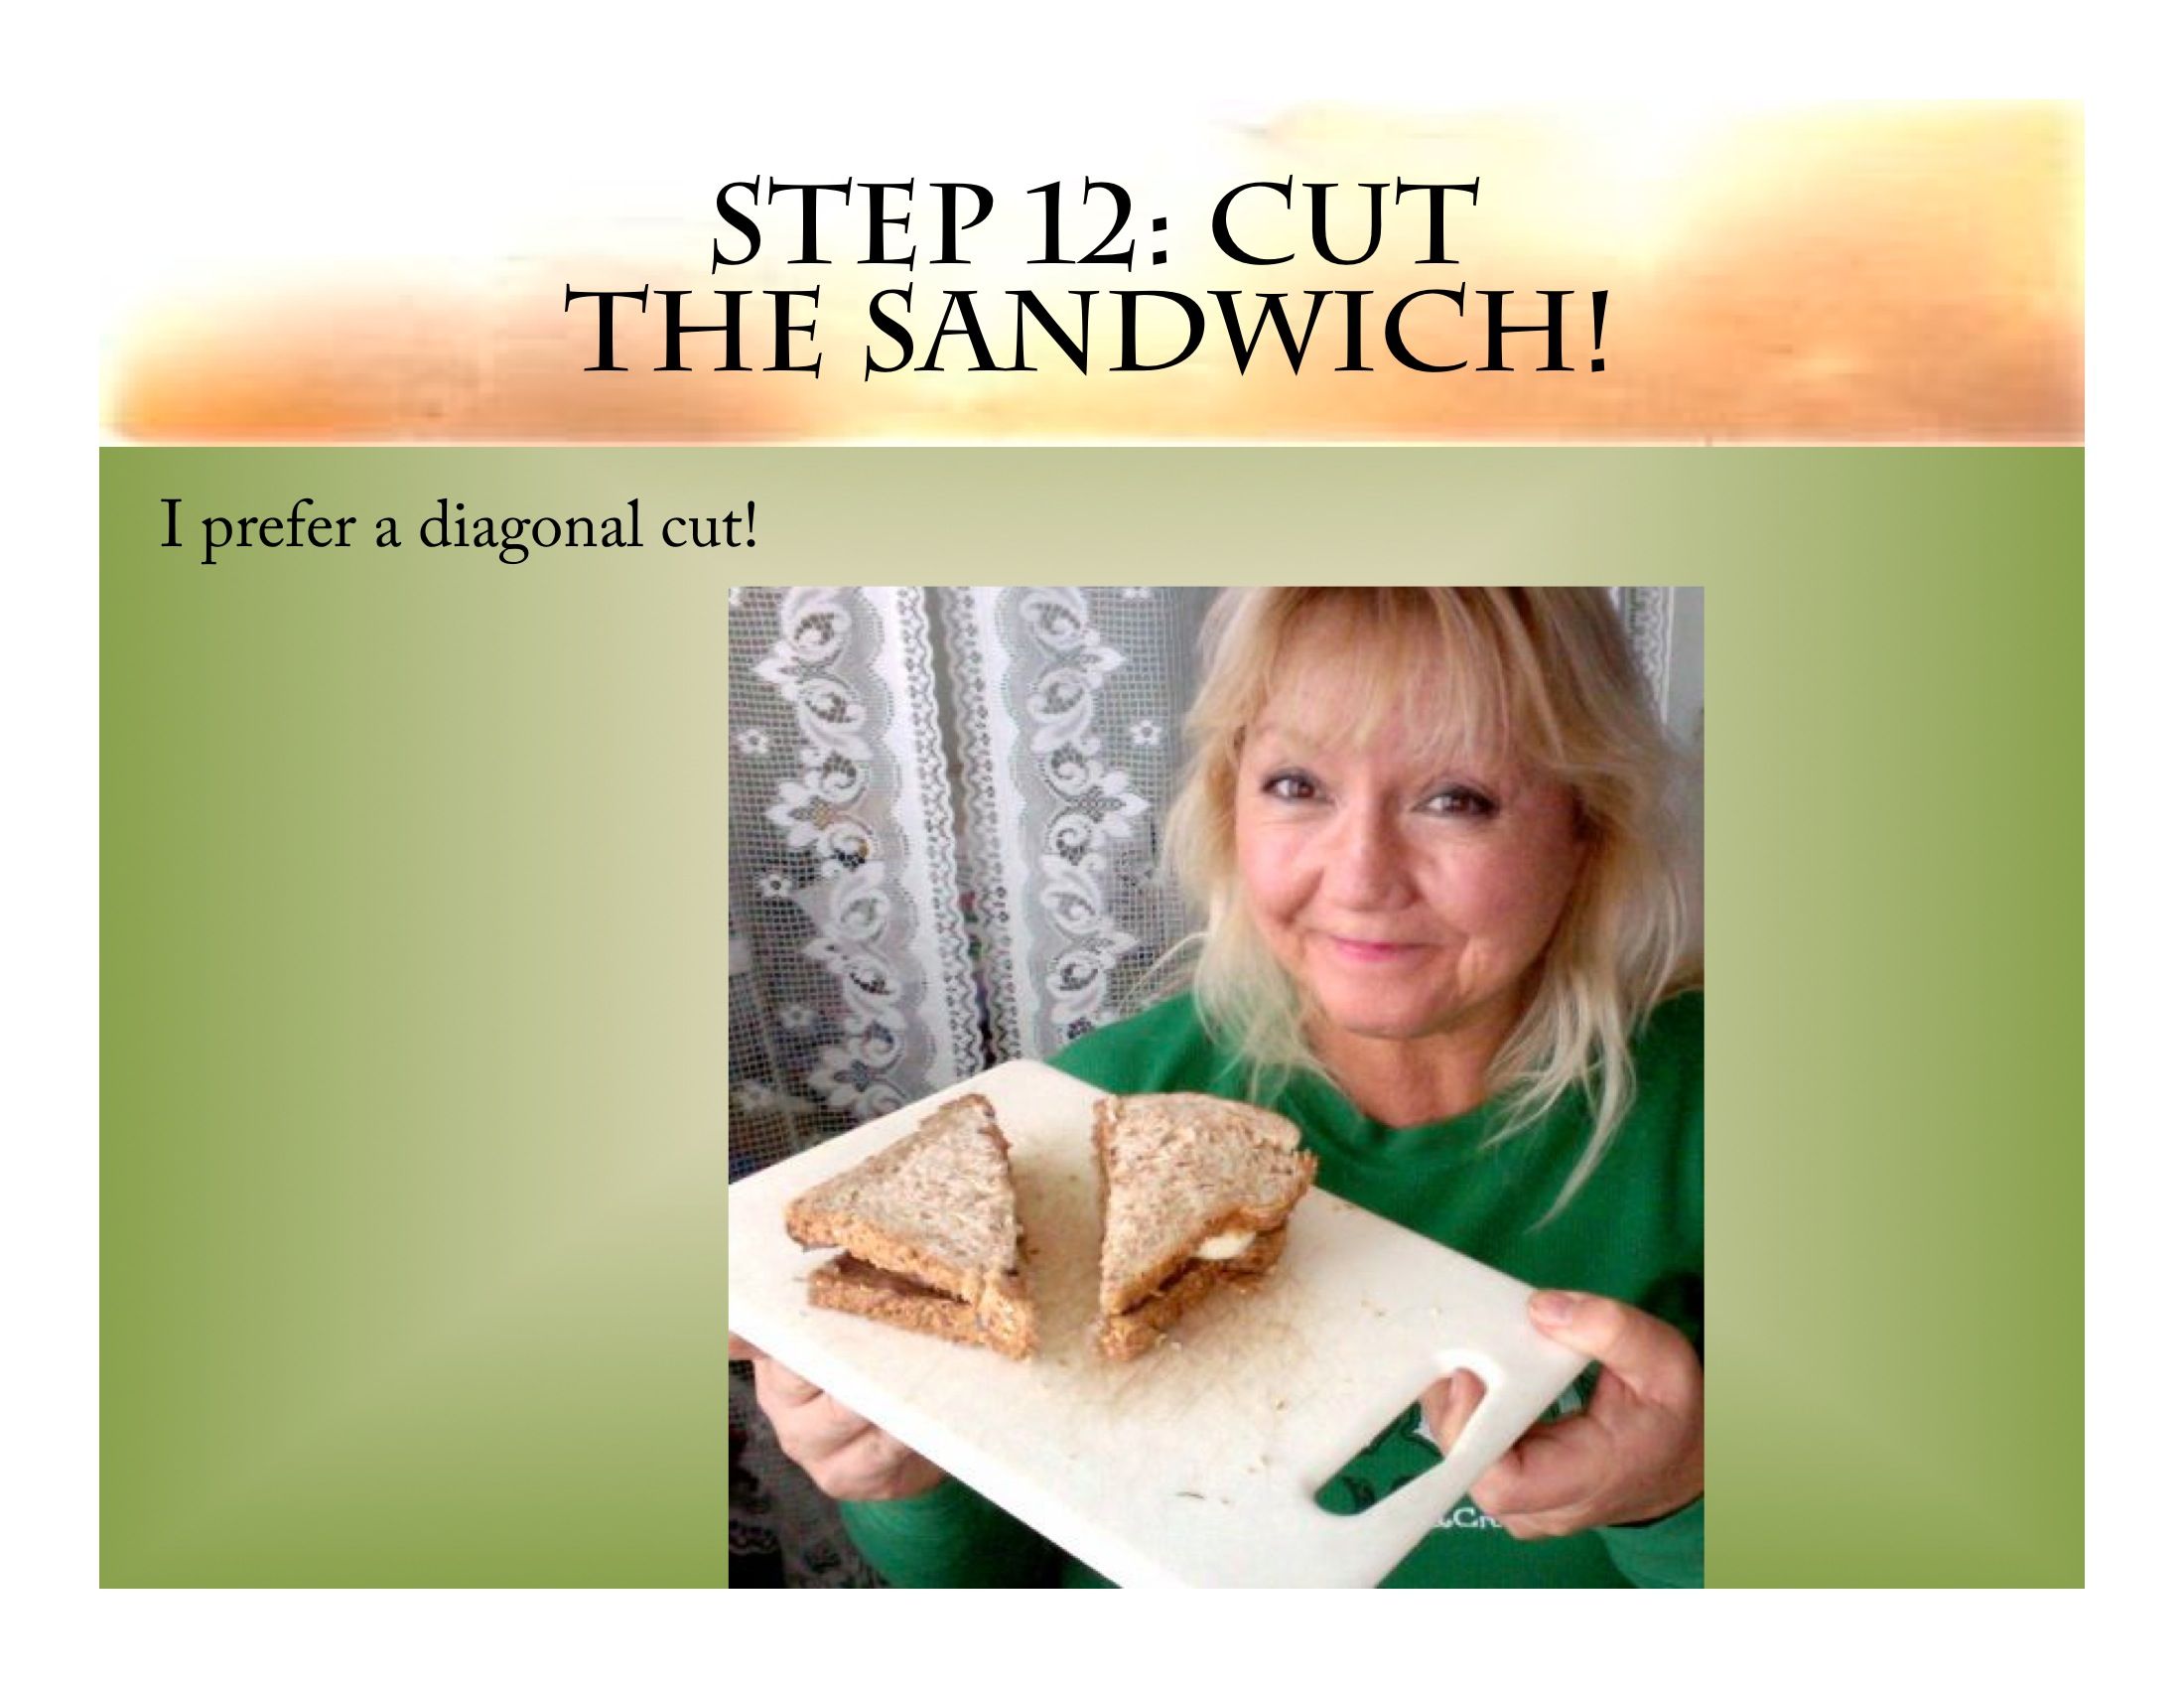 Step 12: The Cut Sandwich